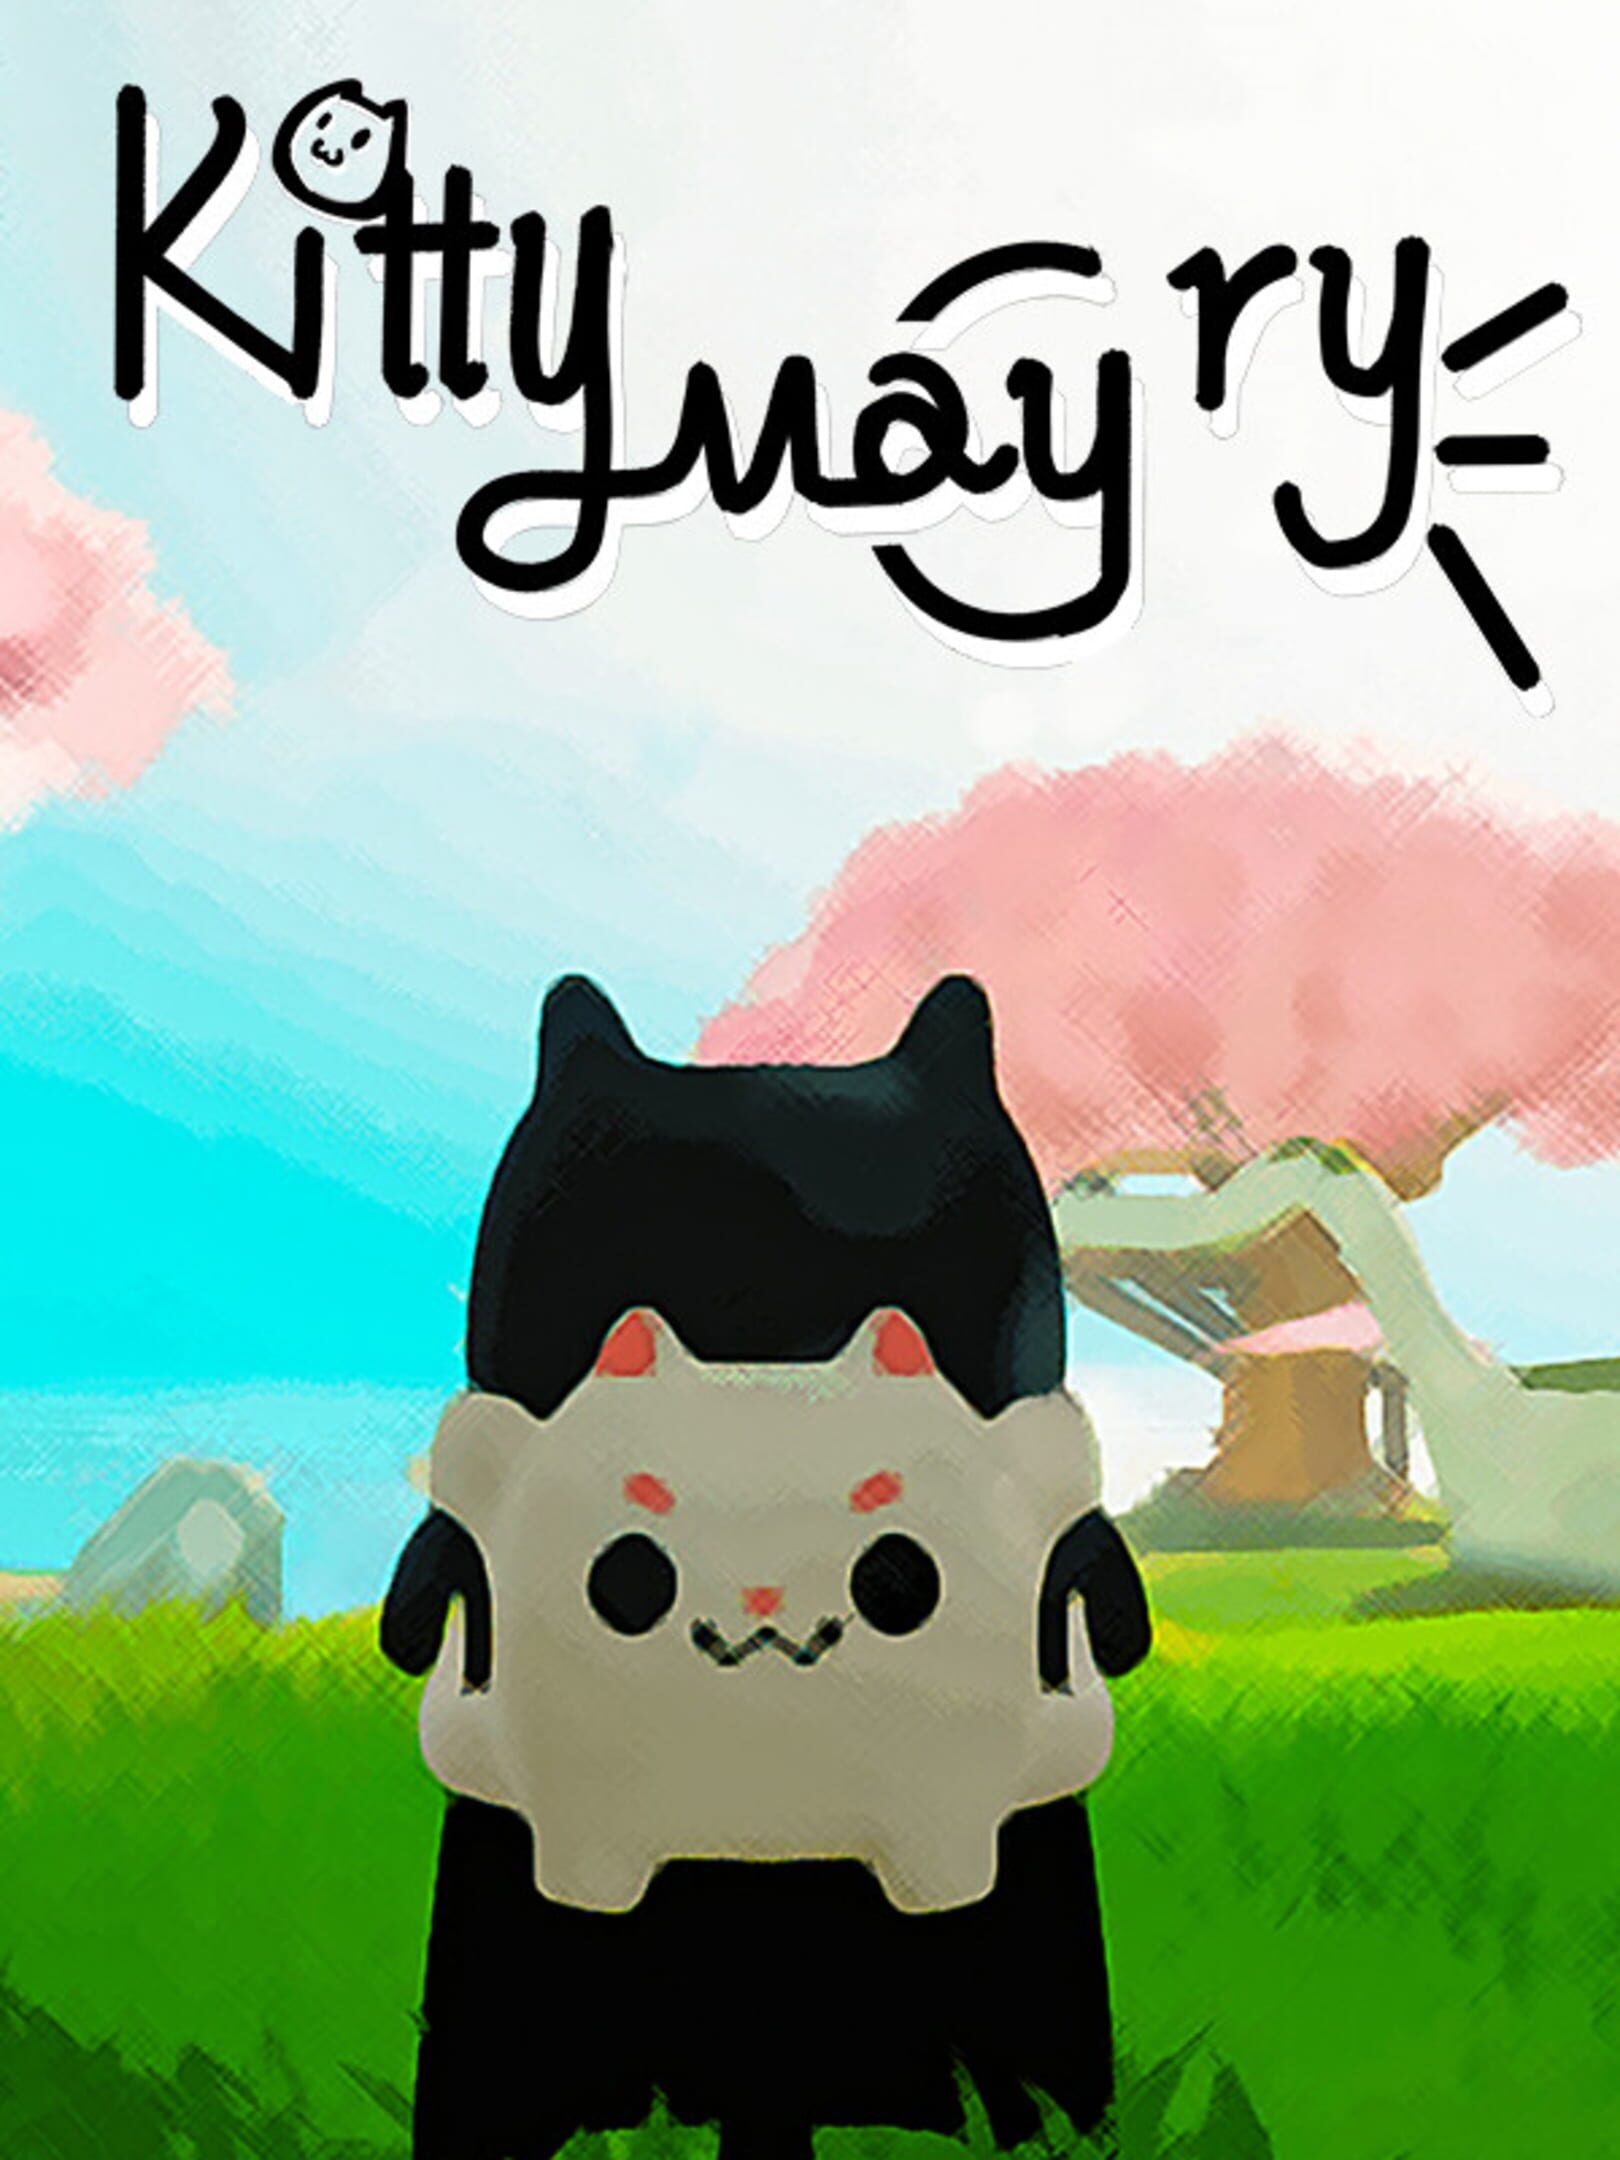 喵之旅人/Kitty May Cry